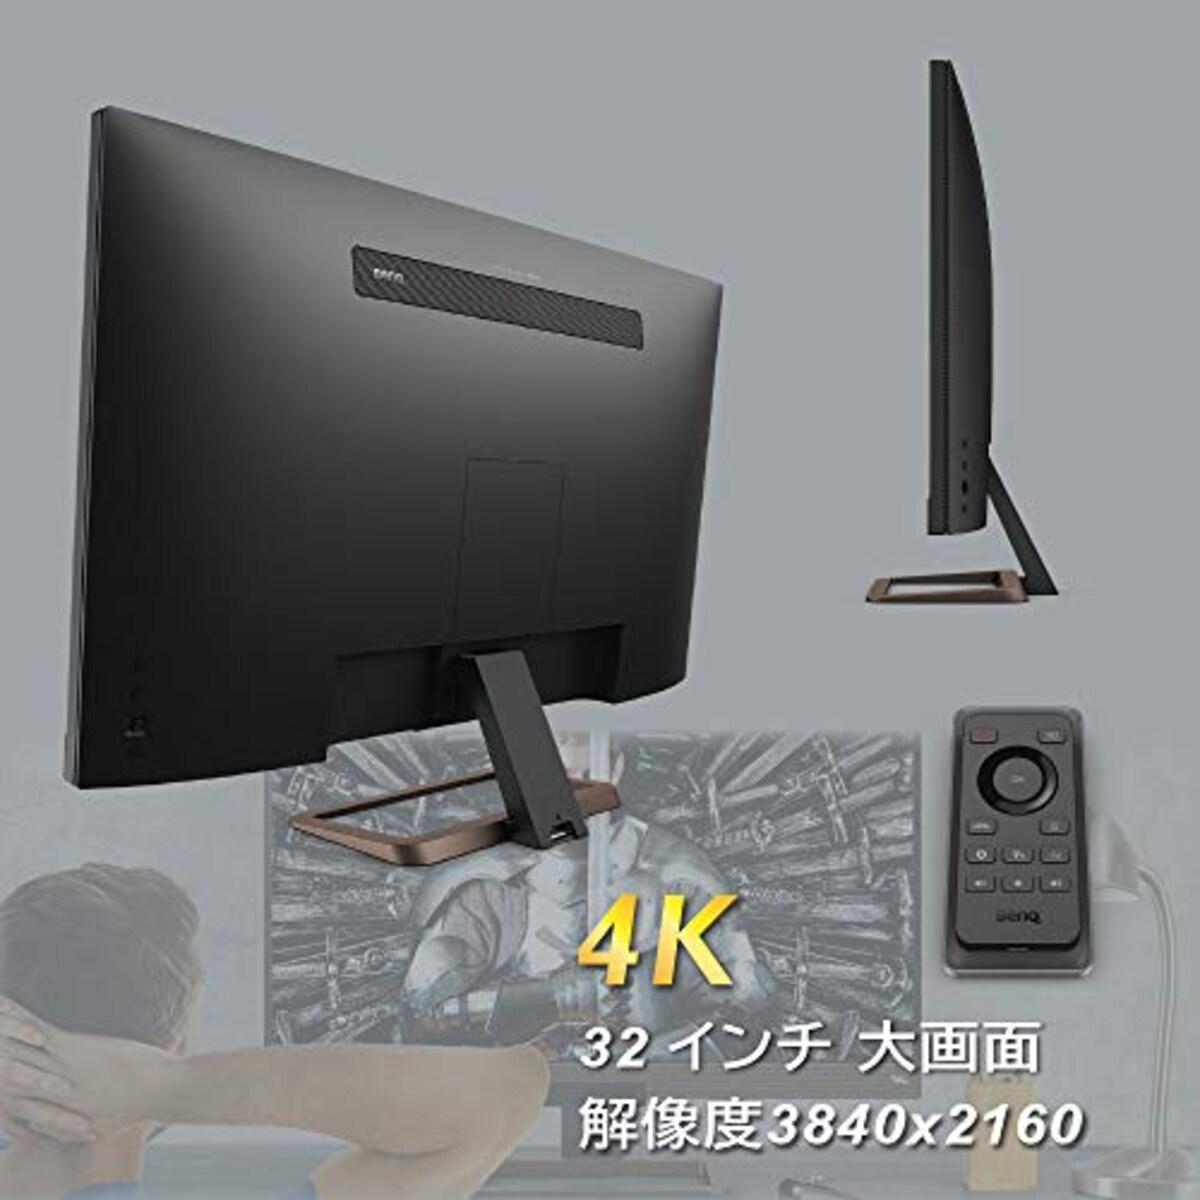  【リサイクル券付き】BenQ EW3280U モニター (32インチ/4K/IPS/DisplayHDR400/HDRi/2.1chスピーカー/リモコン/HDMI/DP/USB-C/60W給電)画像3 